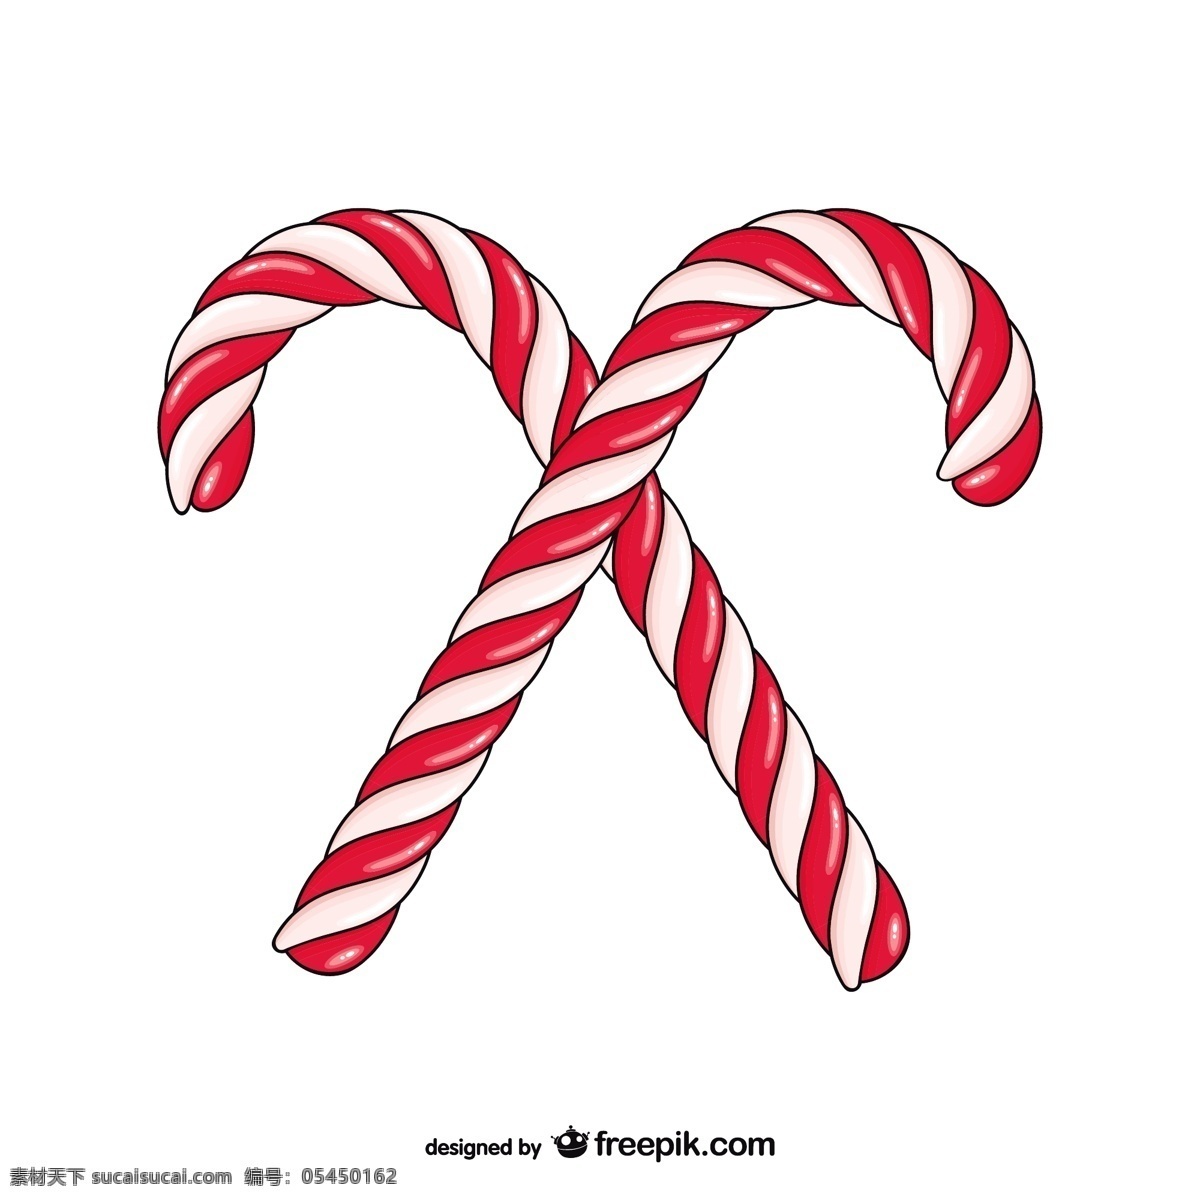 圣诞糖果图 圣诞节 糖果 装饰 绘画 圣诞节矢量 圣诞装饰 装饰品 圣诞装饰品 圣诞藤条 糖果手杖 手杖的载体 白色